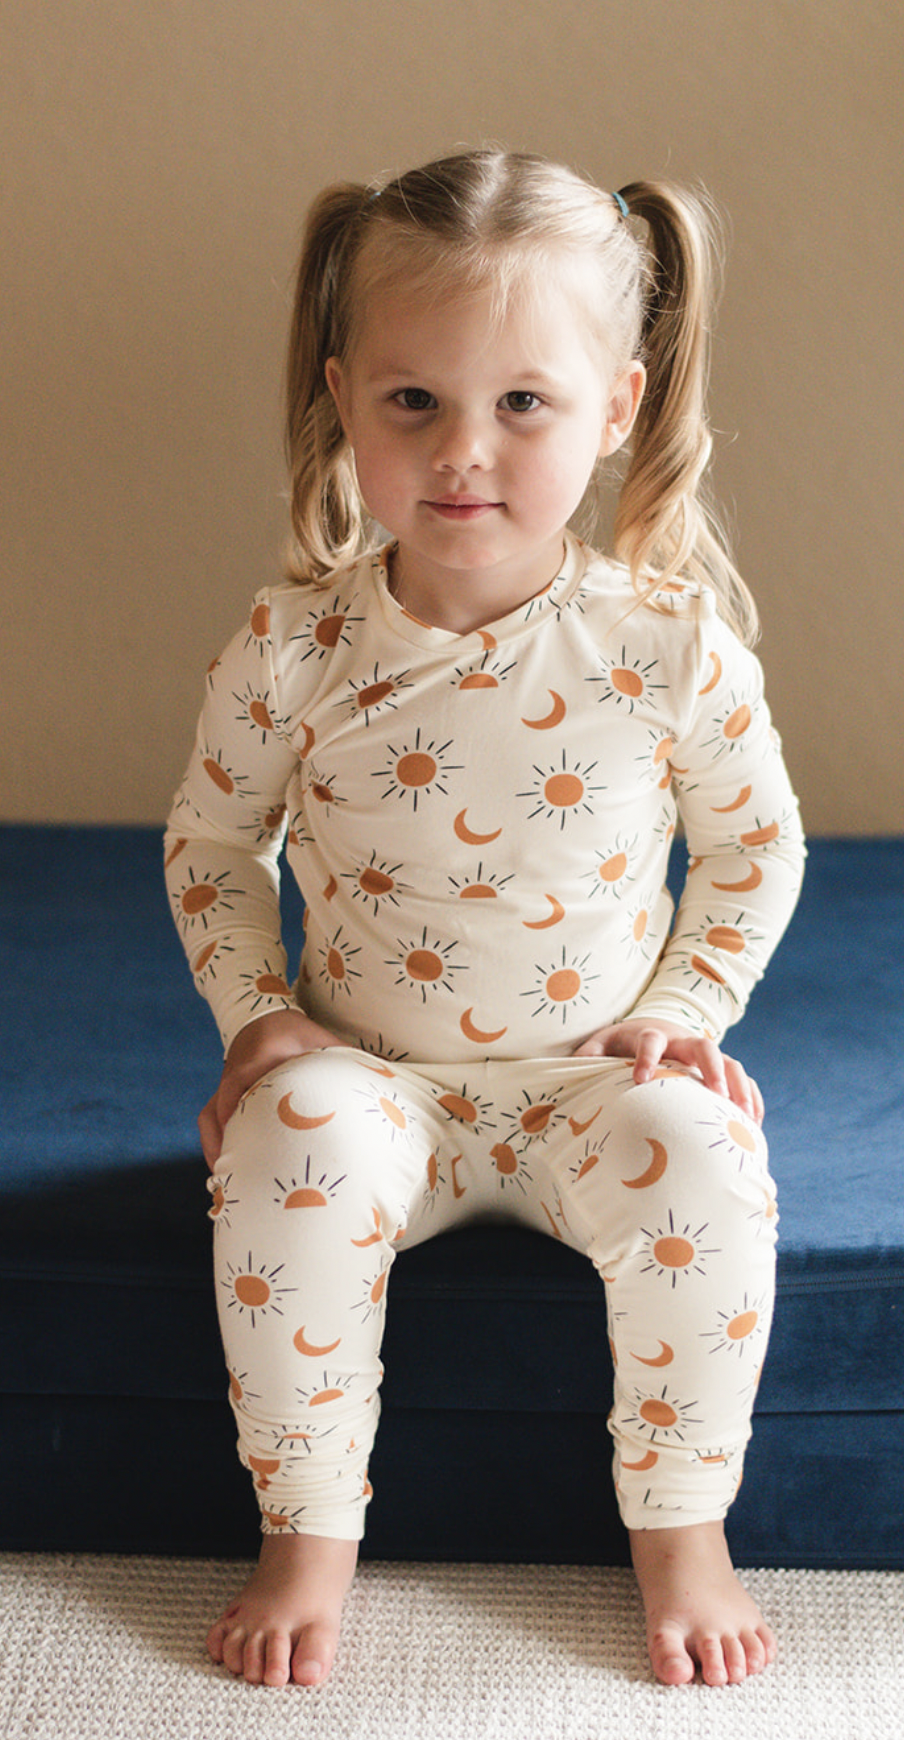 Conjunto de pijama para niños - Boho Sol y Luna